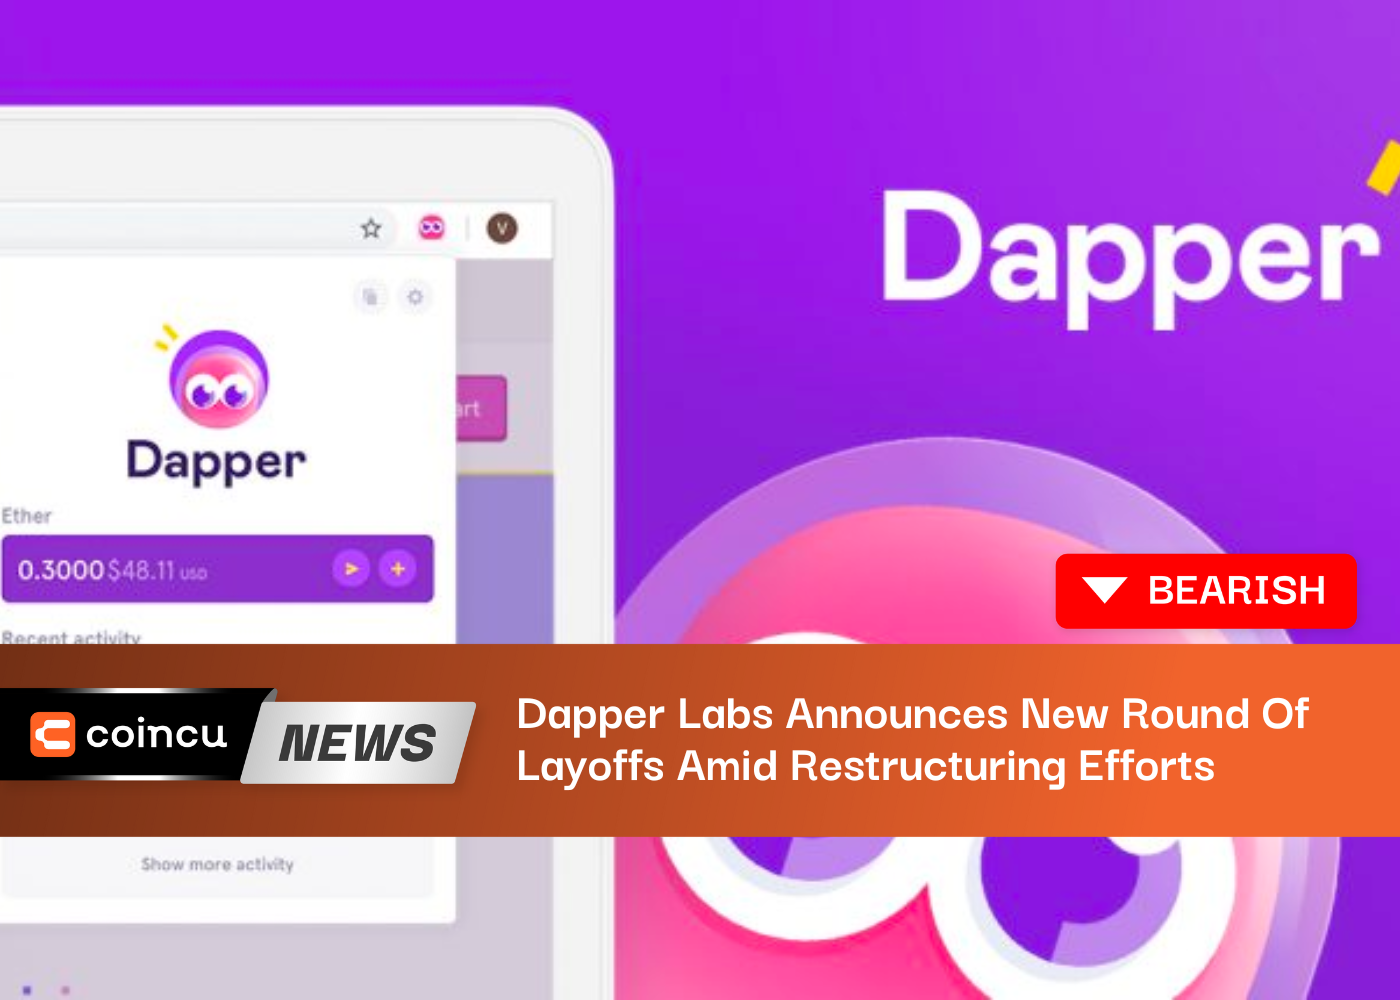 Dapper Labs объявляет о новом раунде увольнений на фоне усилий по реструктуризации